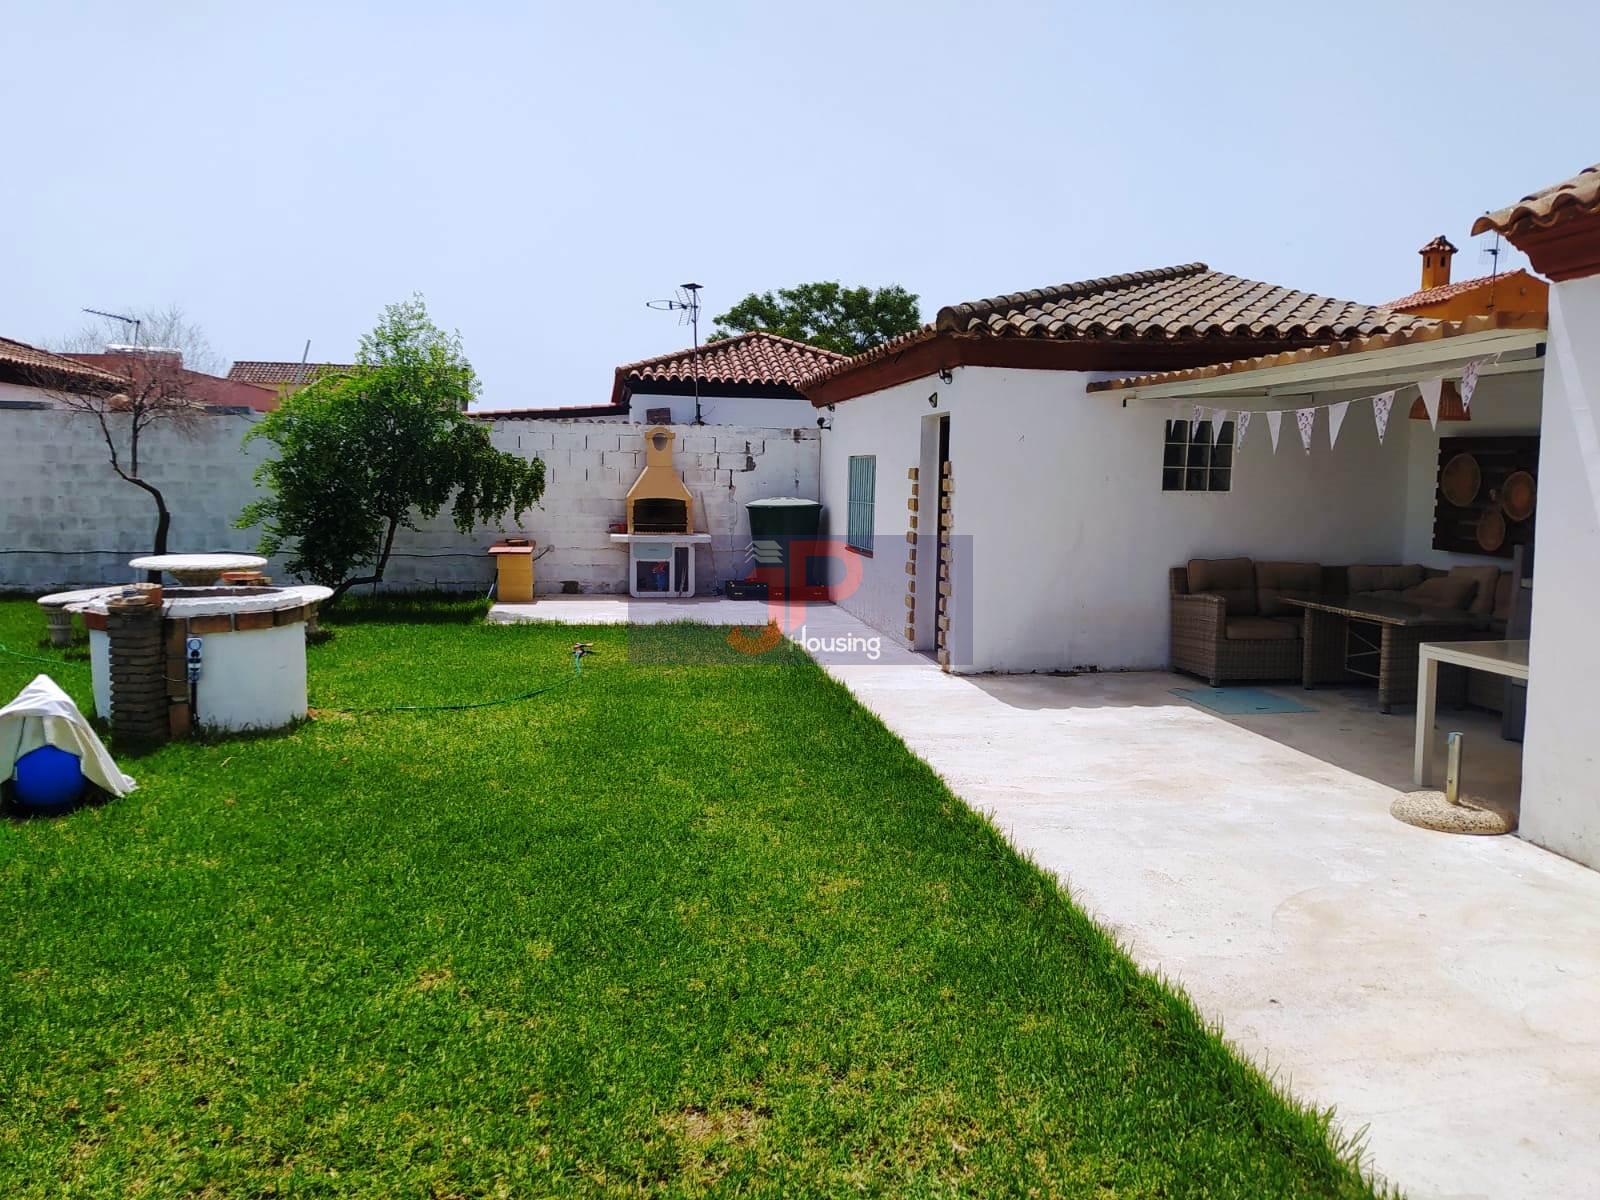 For sale of rural property in El Puerto de Santa María